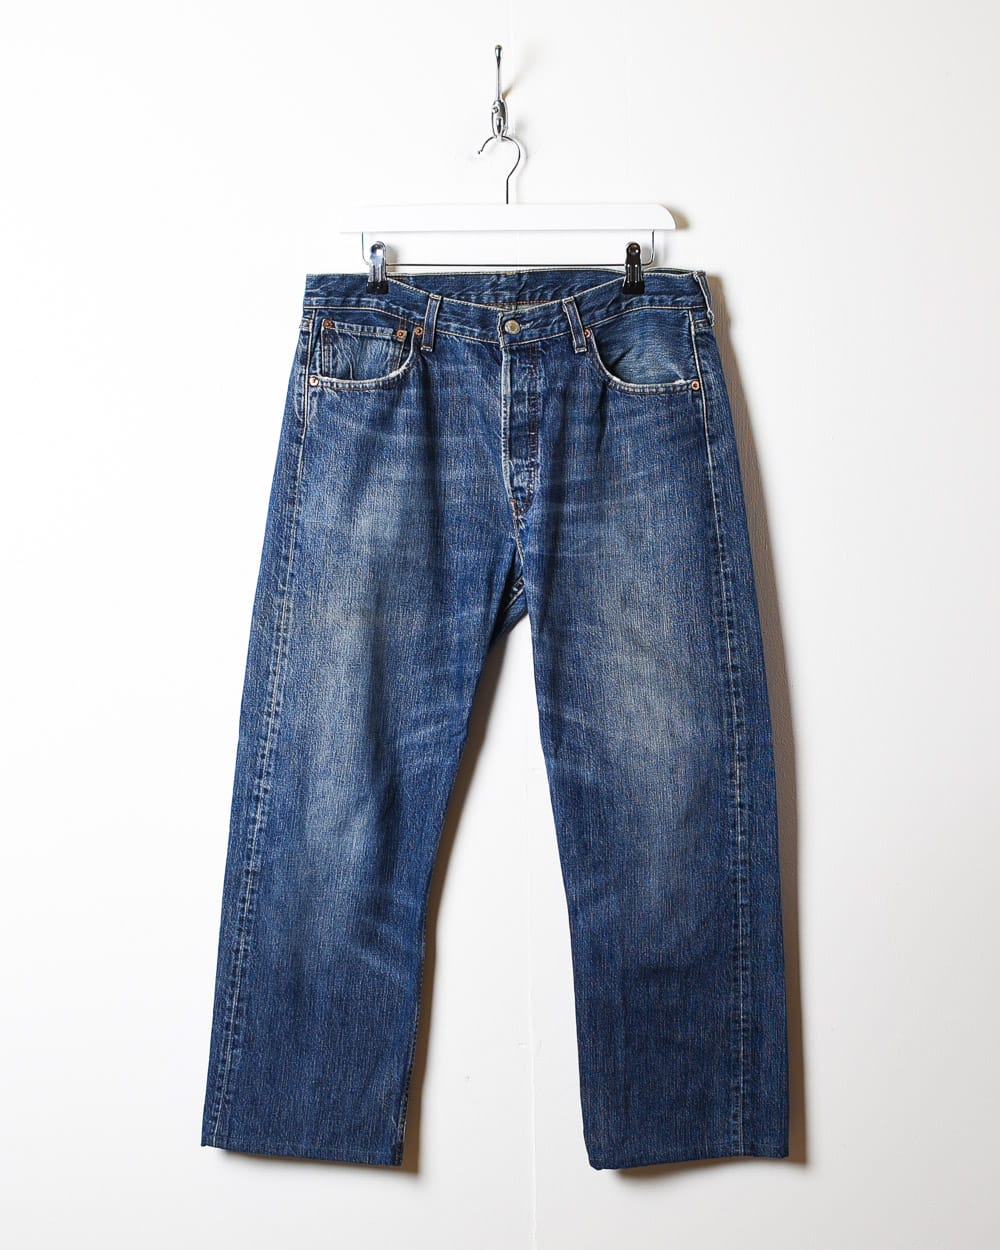 Blue Levi's 501 Jeans - W34 L27